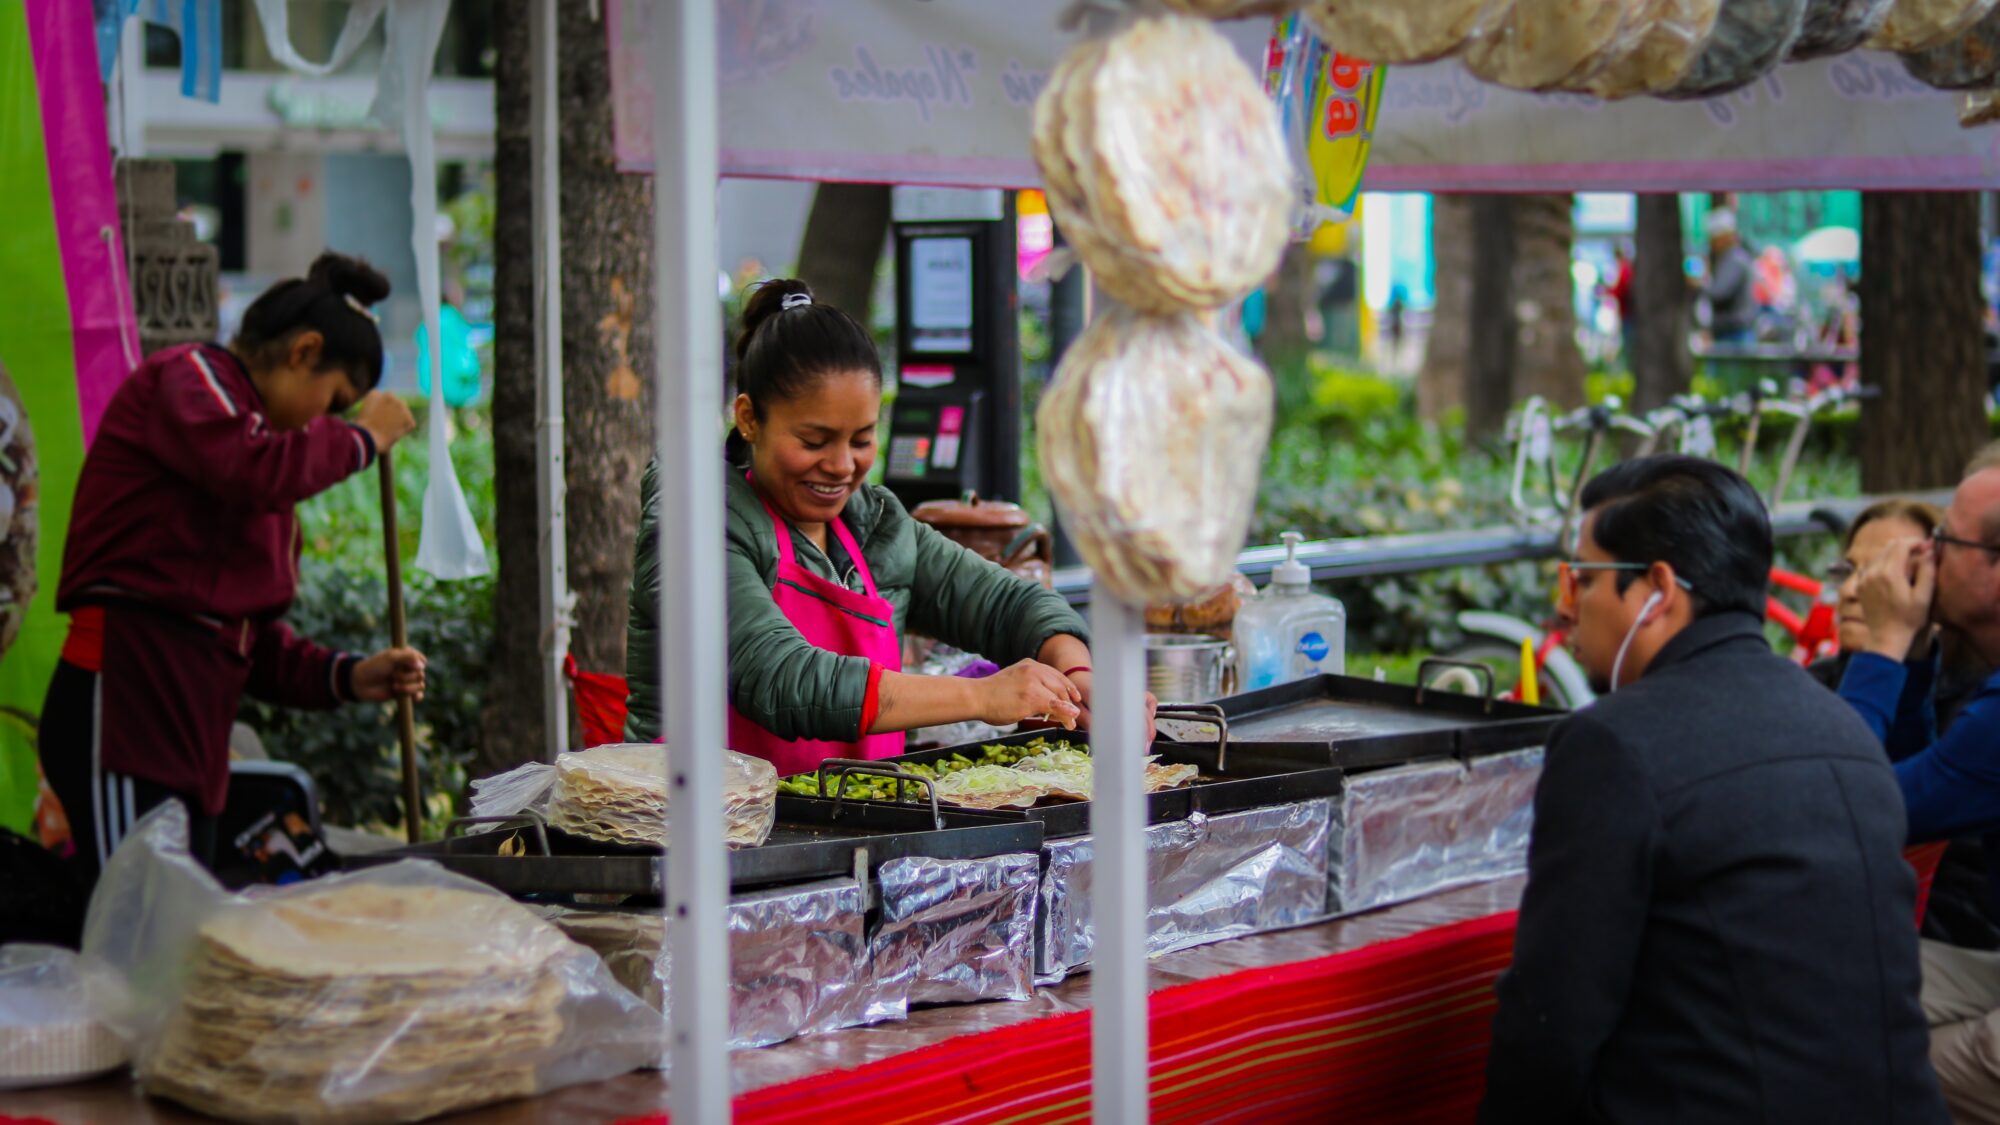 MOVILIDAD HUMANA EN LATINOAMÉRICAEmprendimientos gastronómicos migrantes: un aporte al desarrollo sostenible local